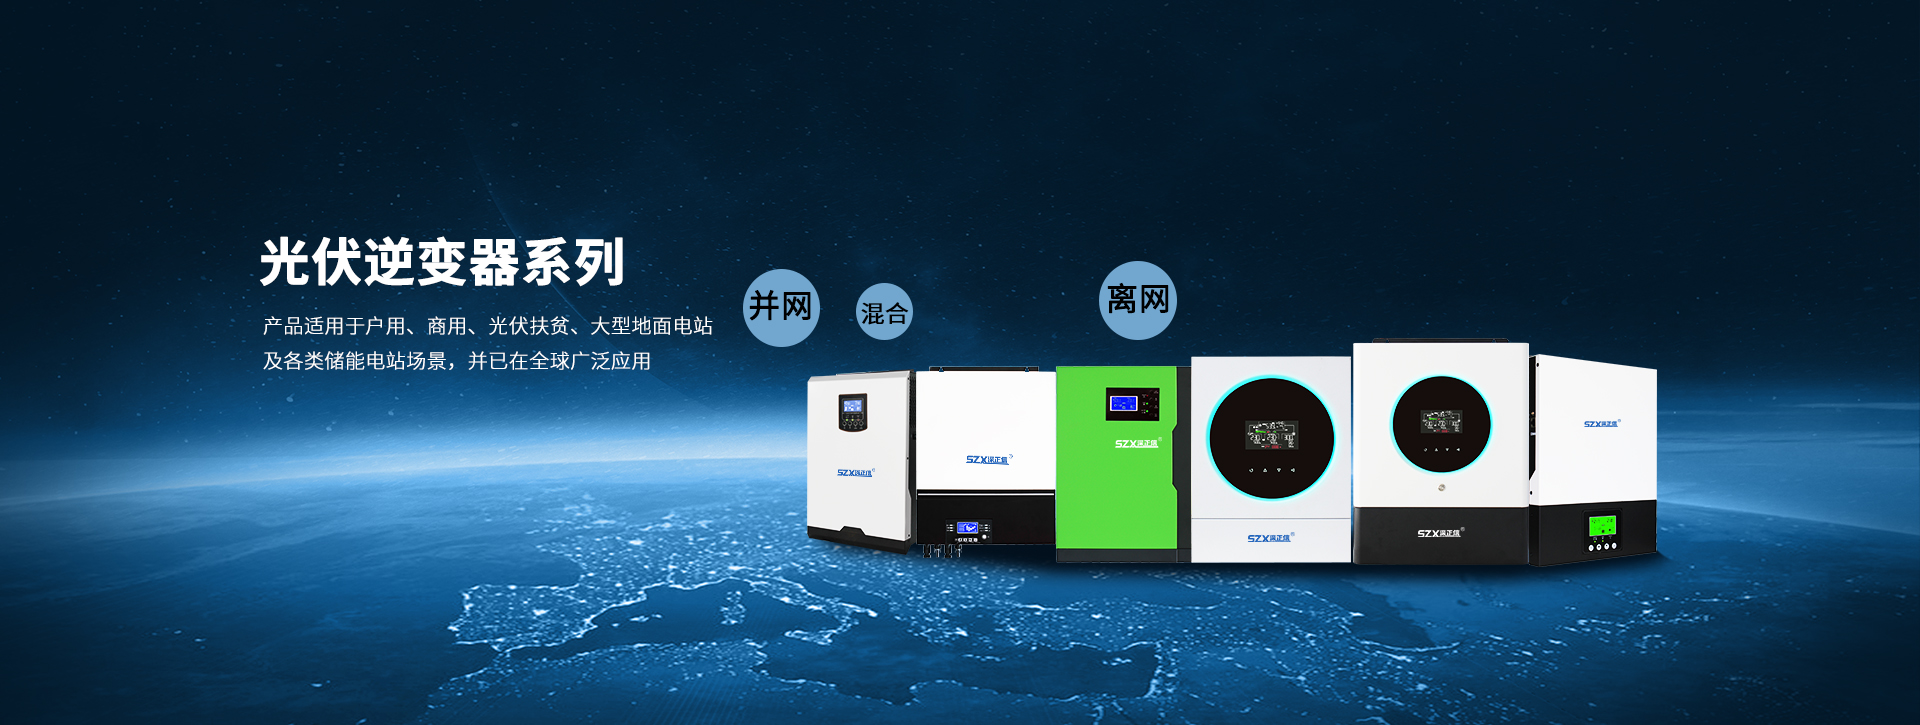 天游ty8官方网站,Ty8天游平台注册,ty8天游线路检测中心,光伏逆变器,太阳能逆变器,光伏发电